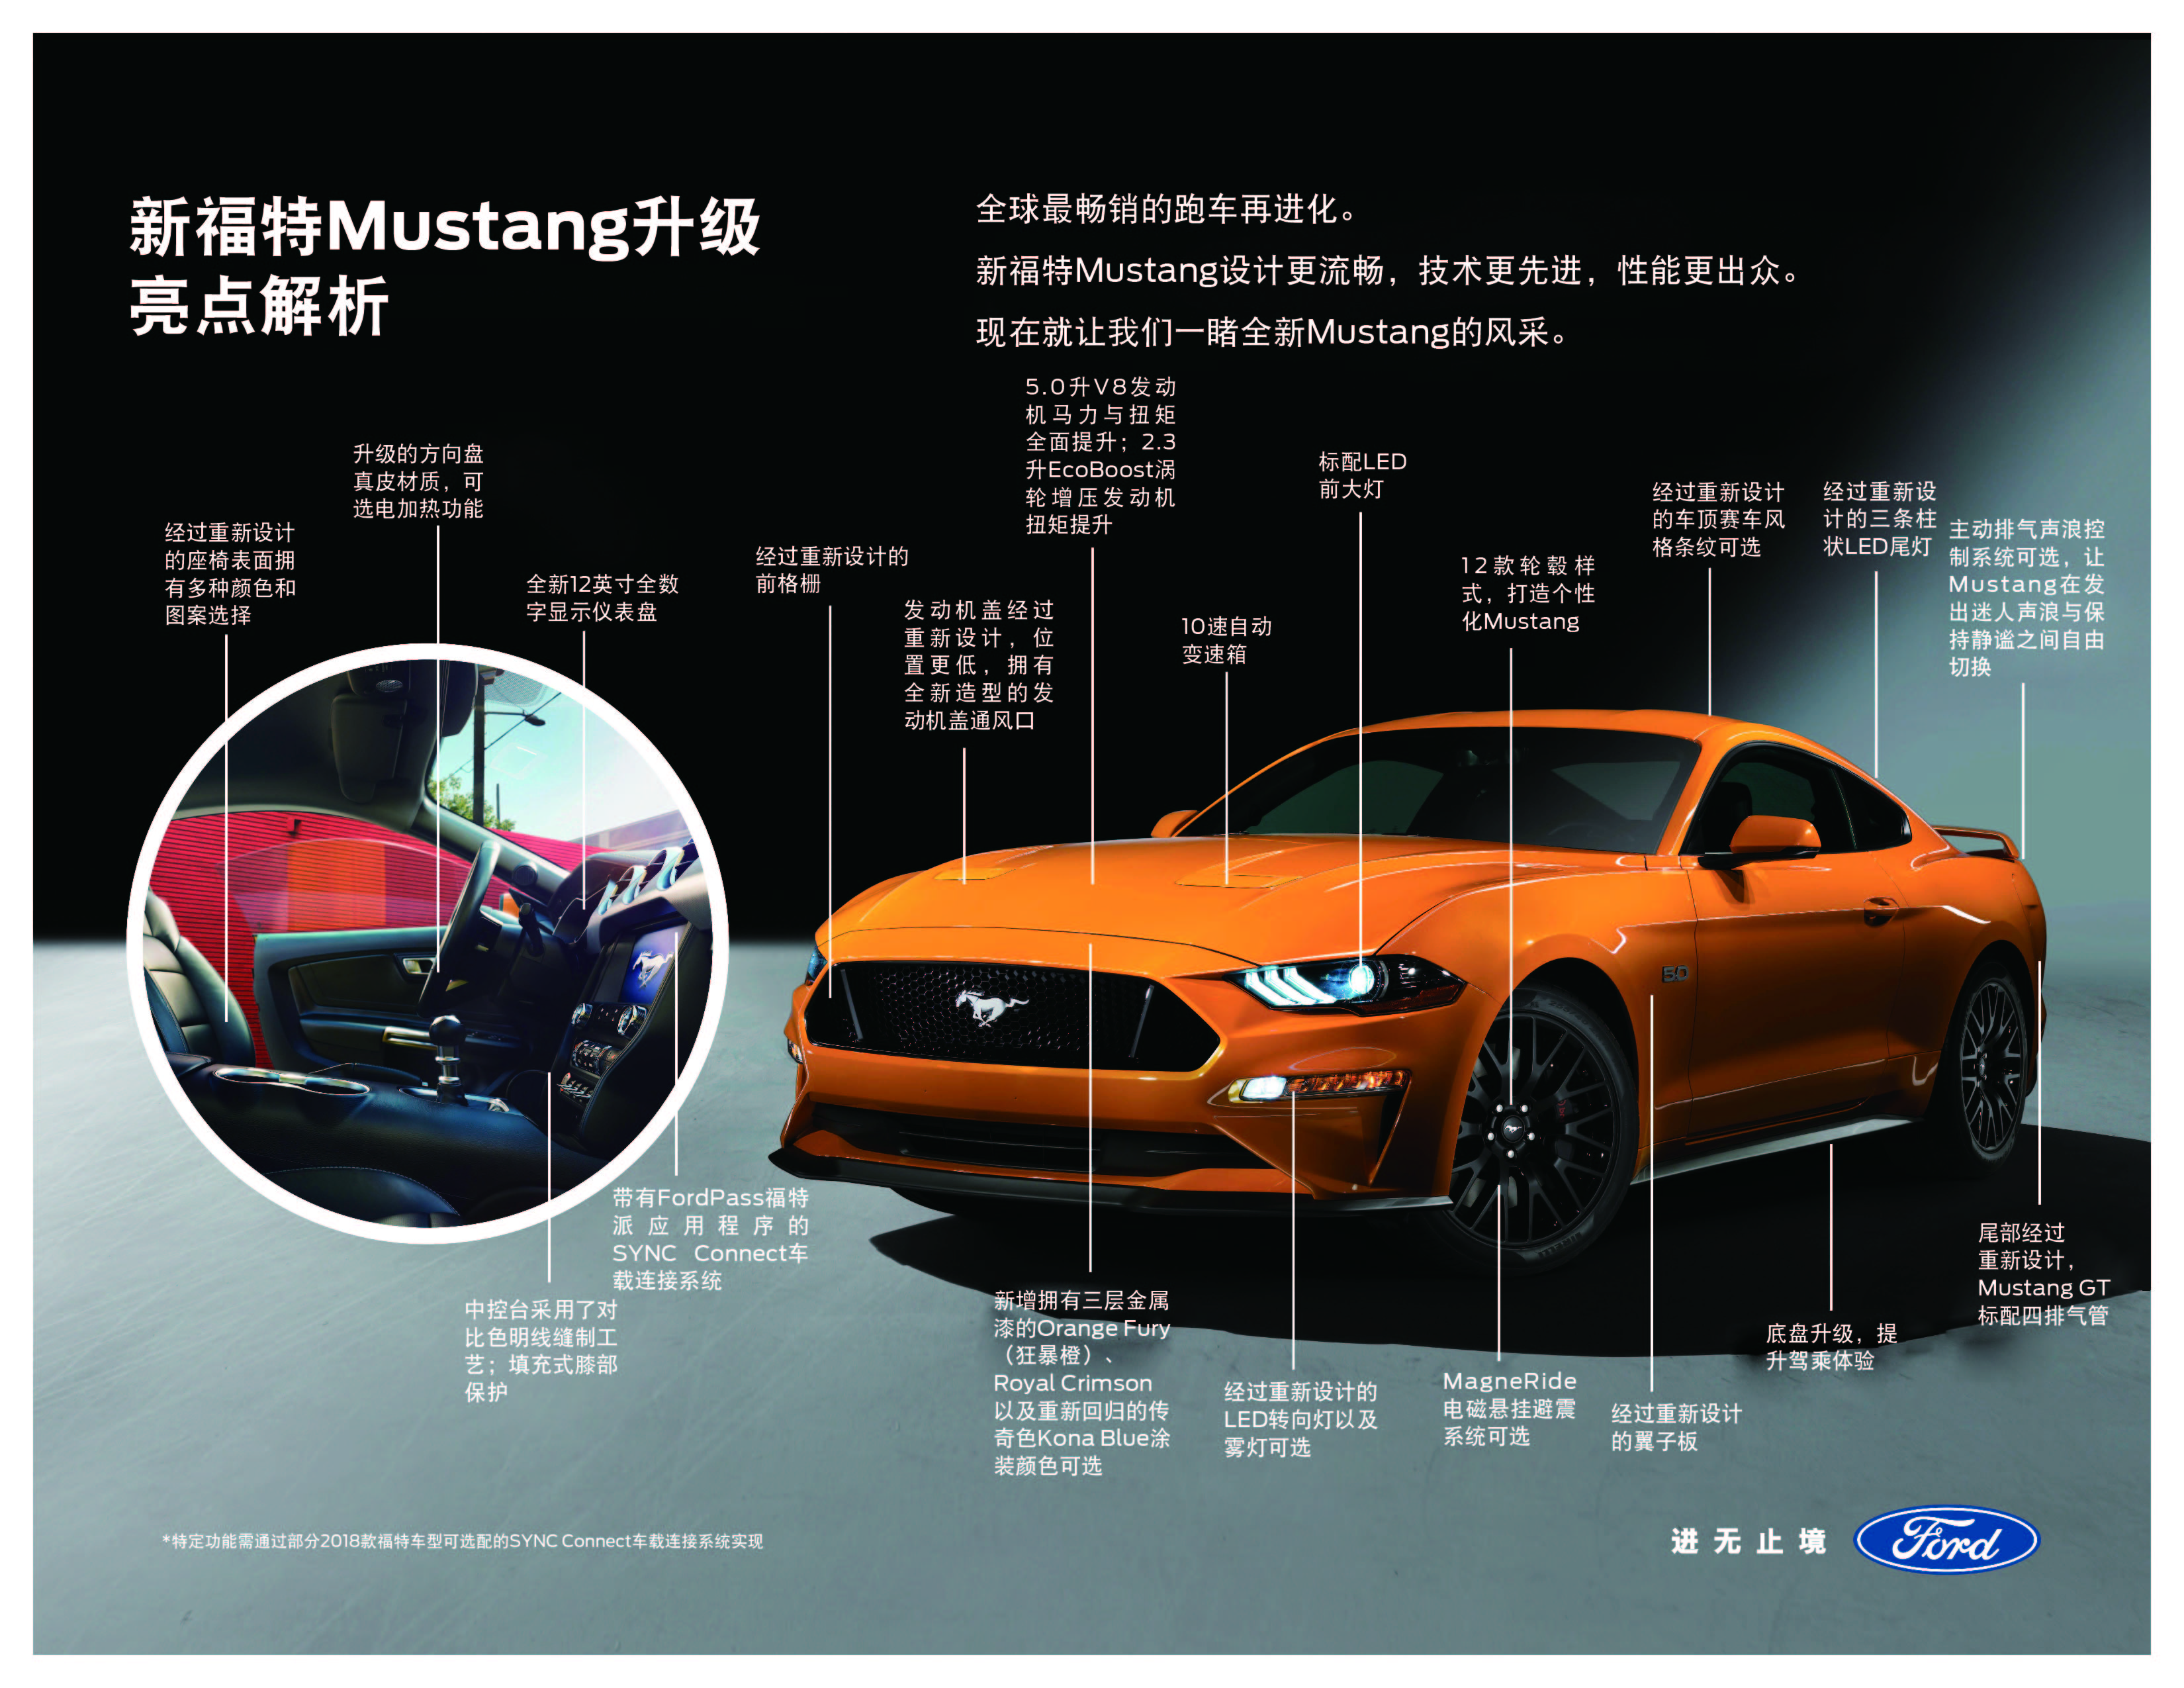 新福特 Mustang 升级亮点解析.jpg